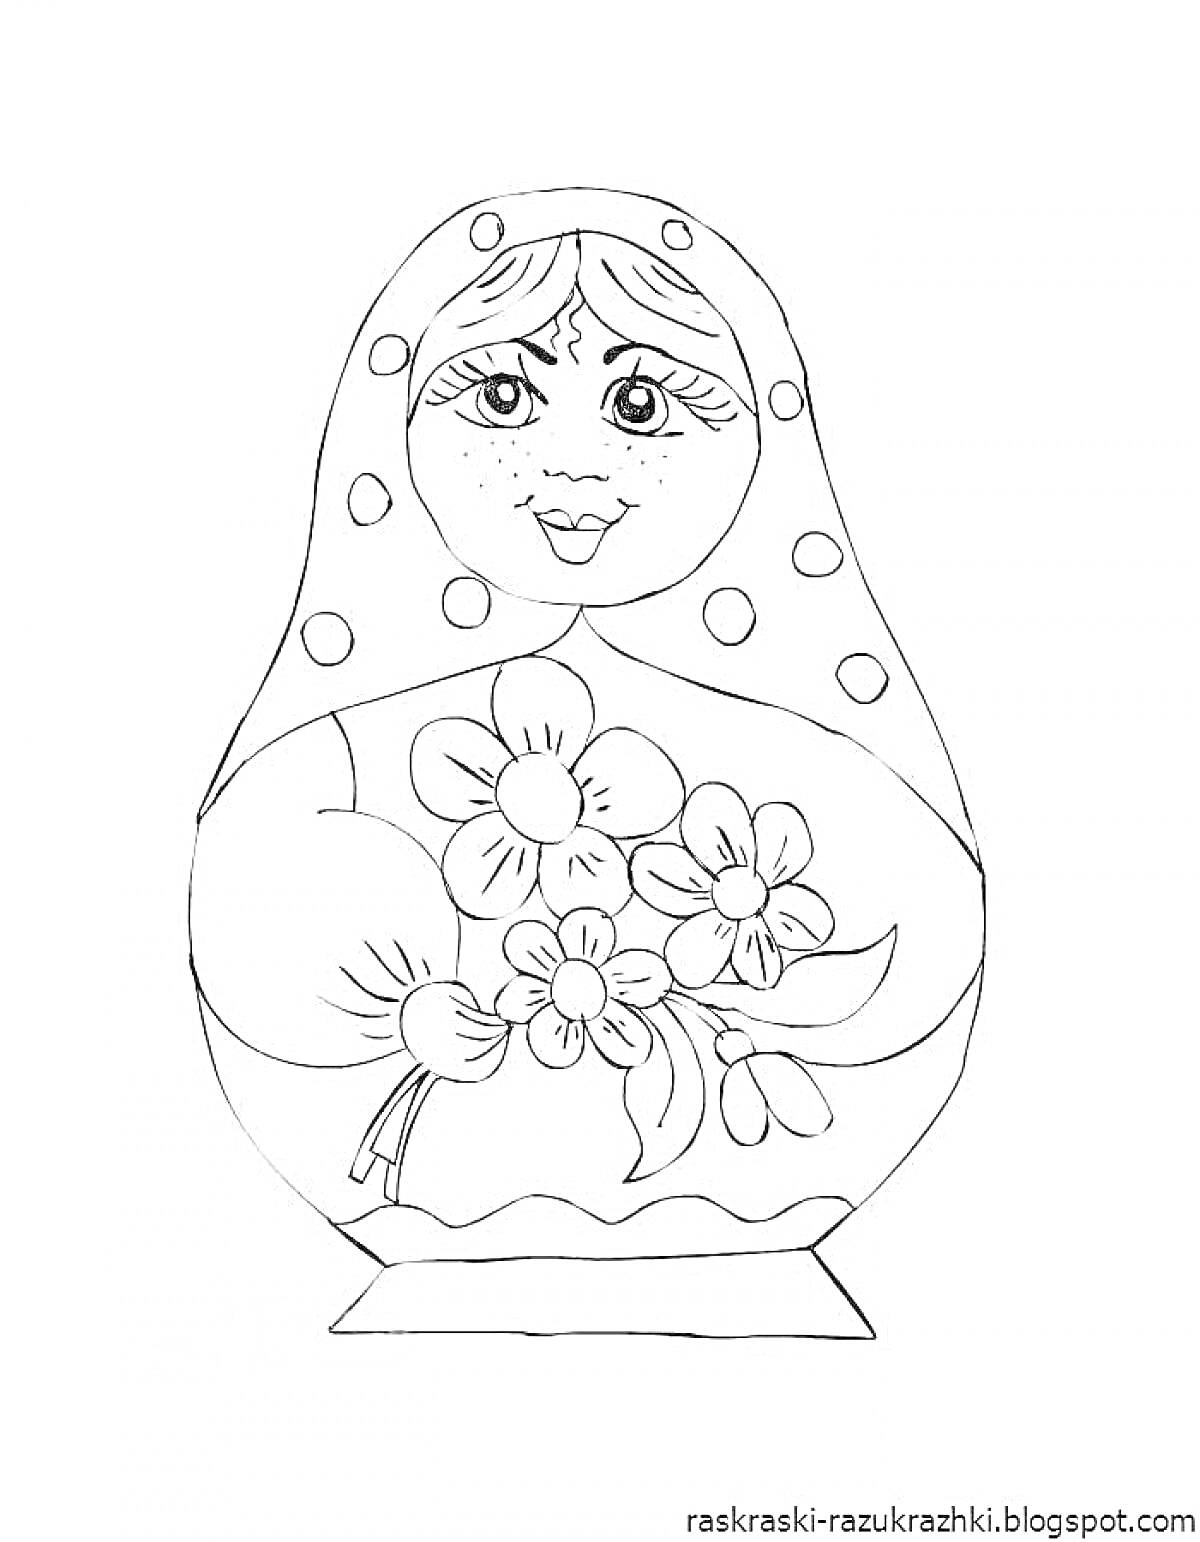 Раскраска Матрешка с букетом цветов, с узором в виде точек на платке